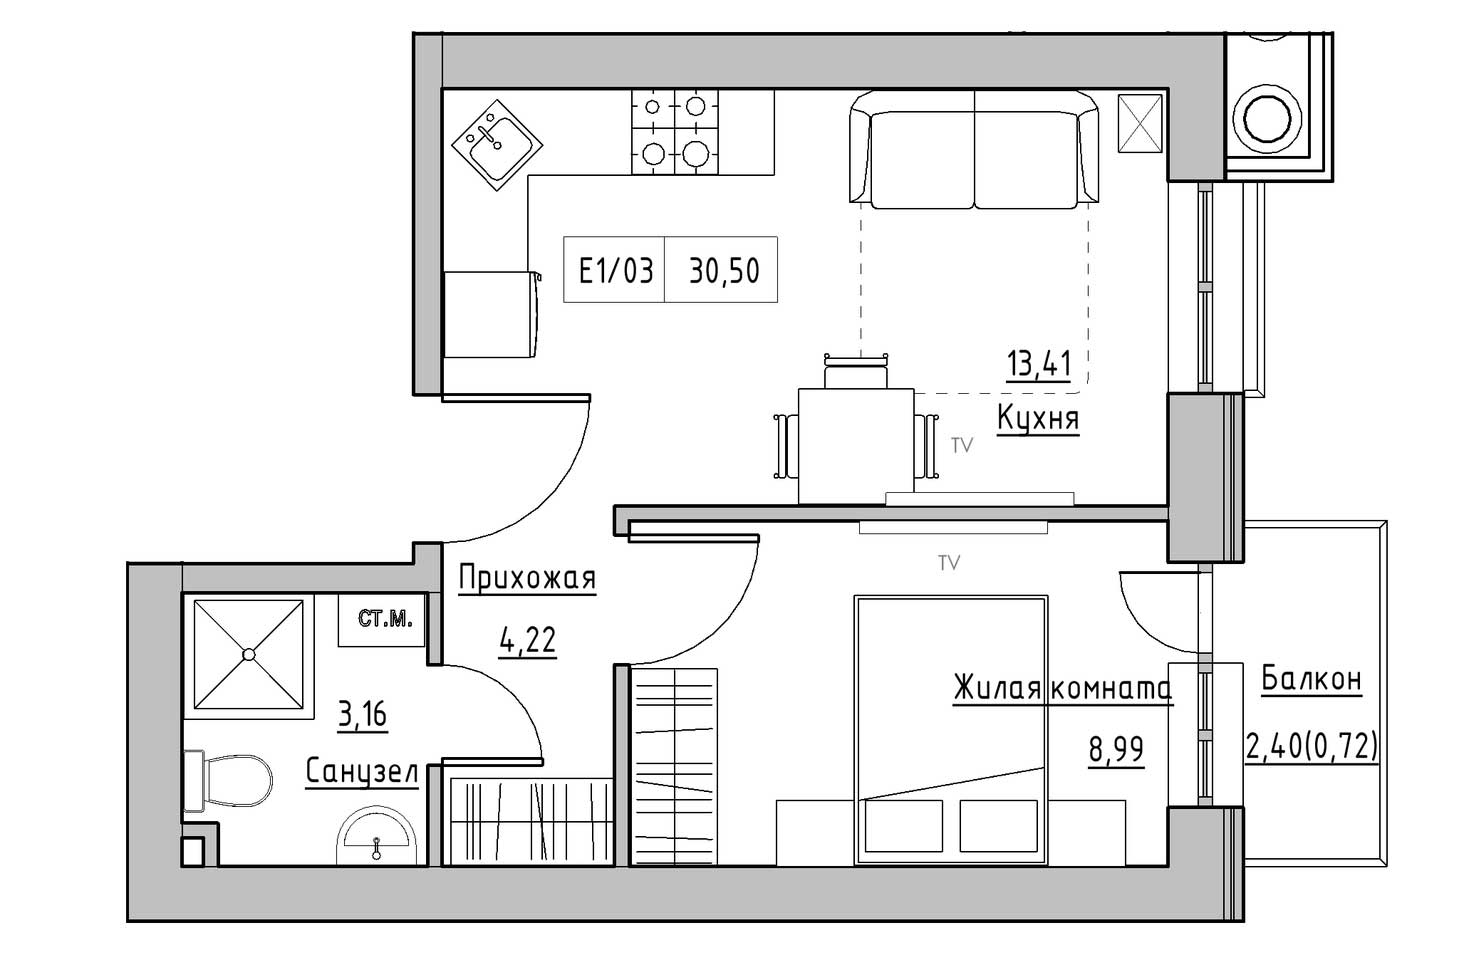 Планировка 1-к квартира площей 30.5м2, KS-009-04/0002.